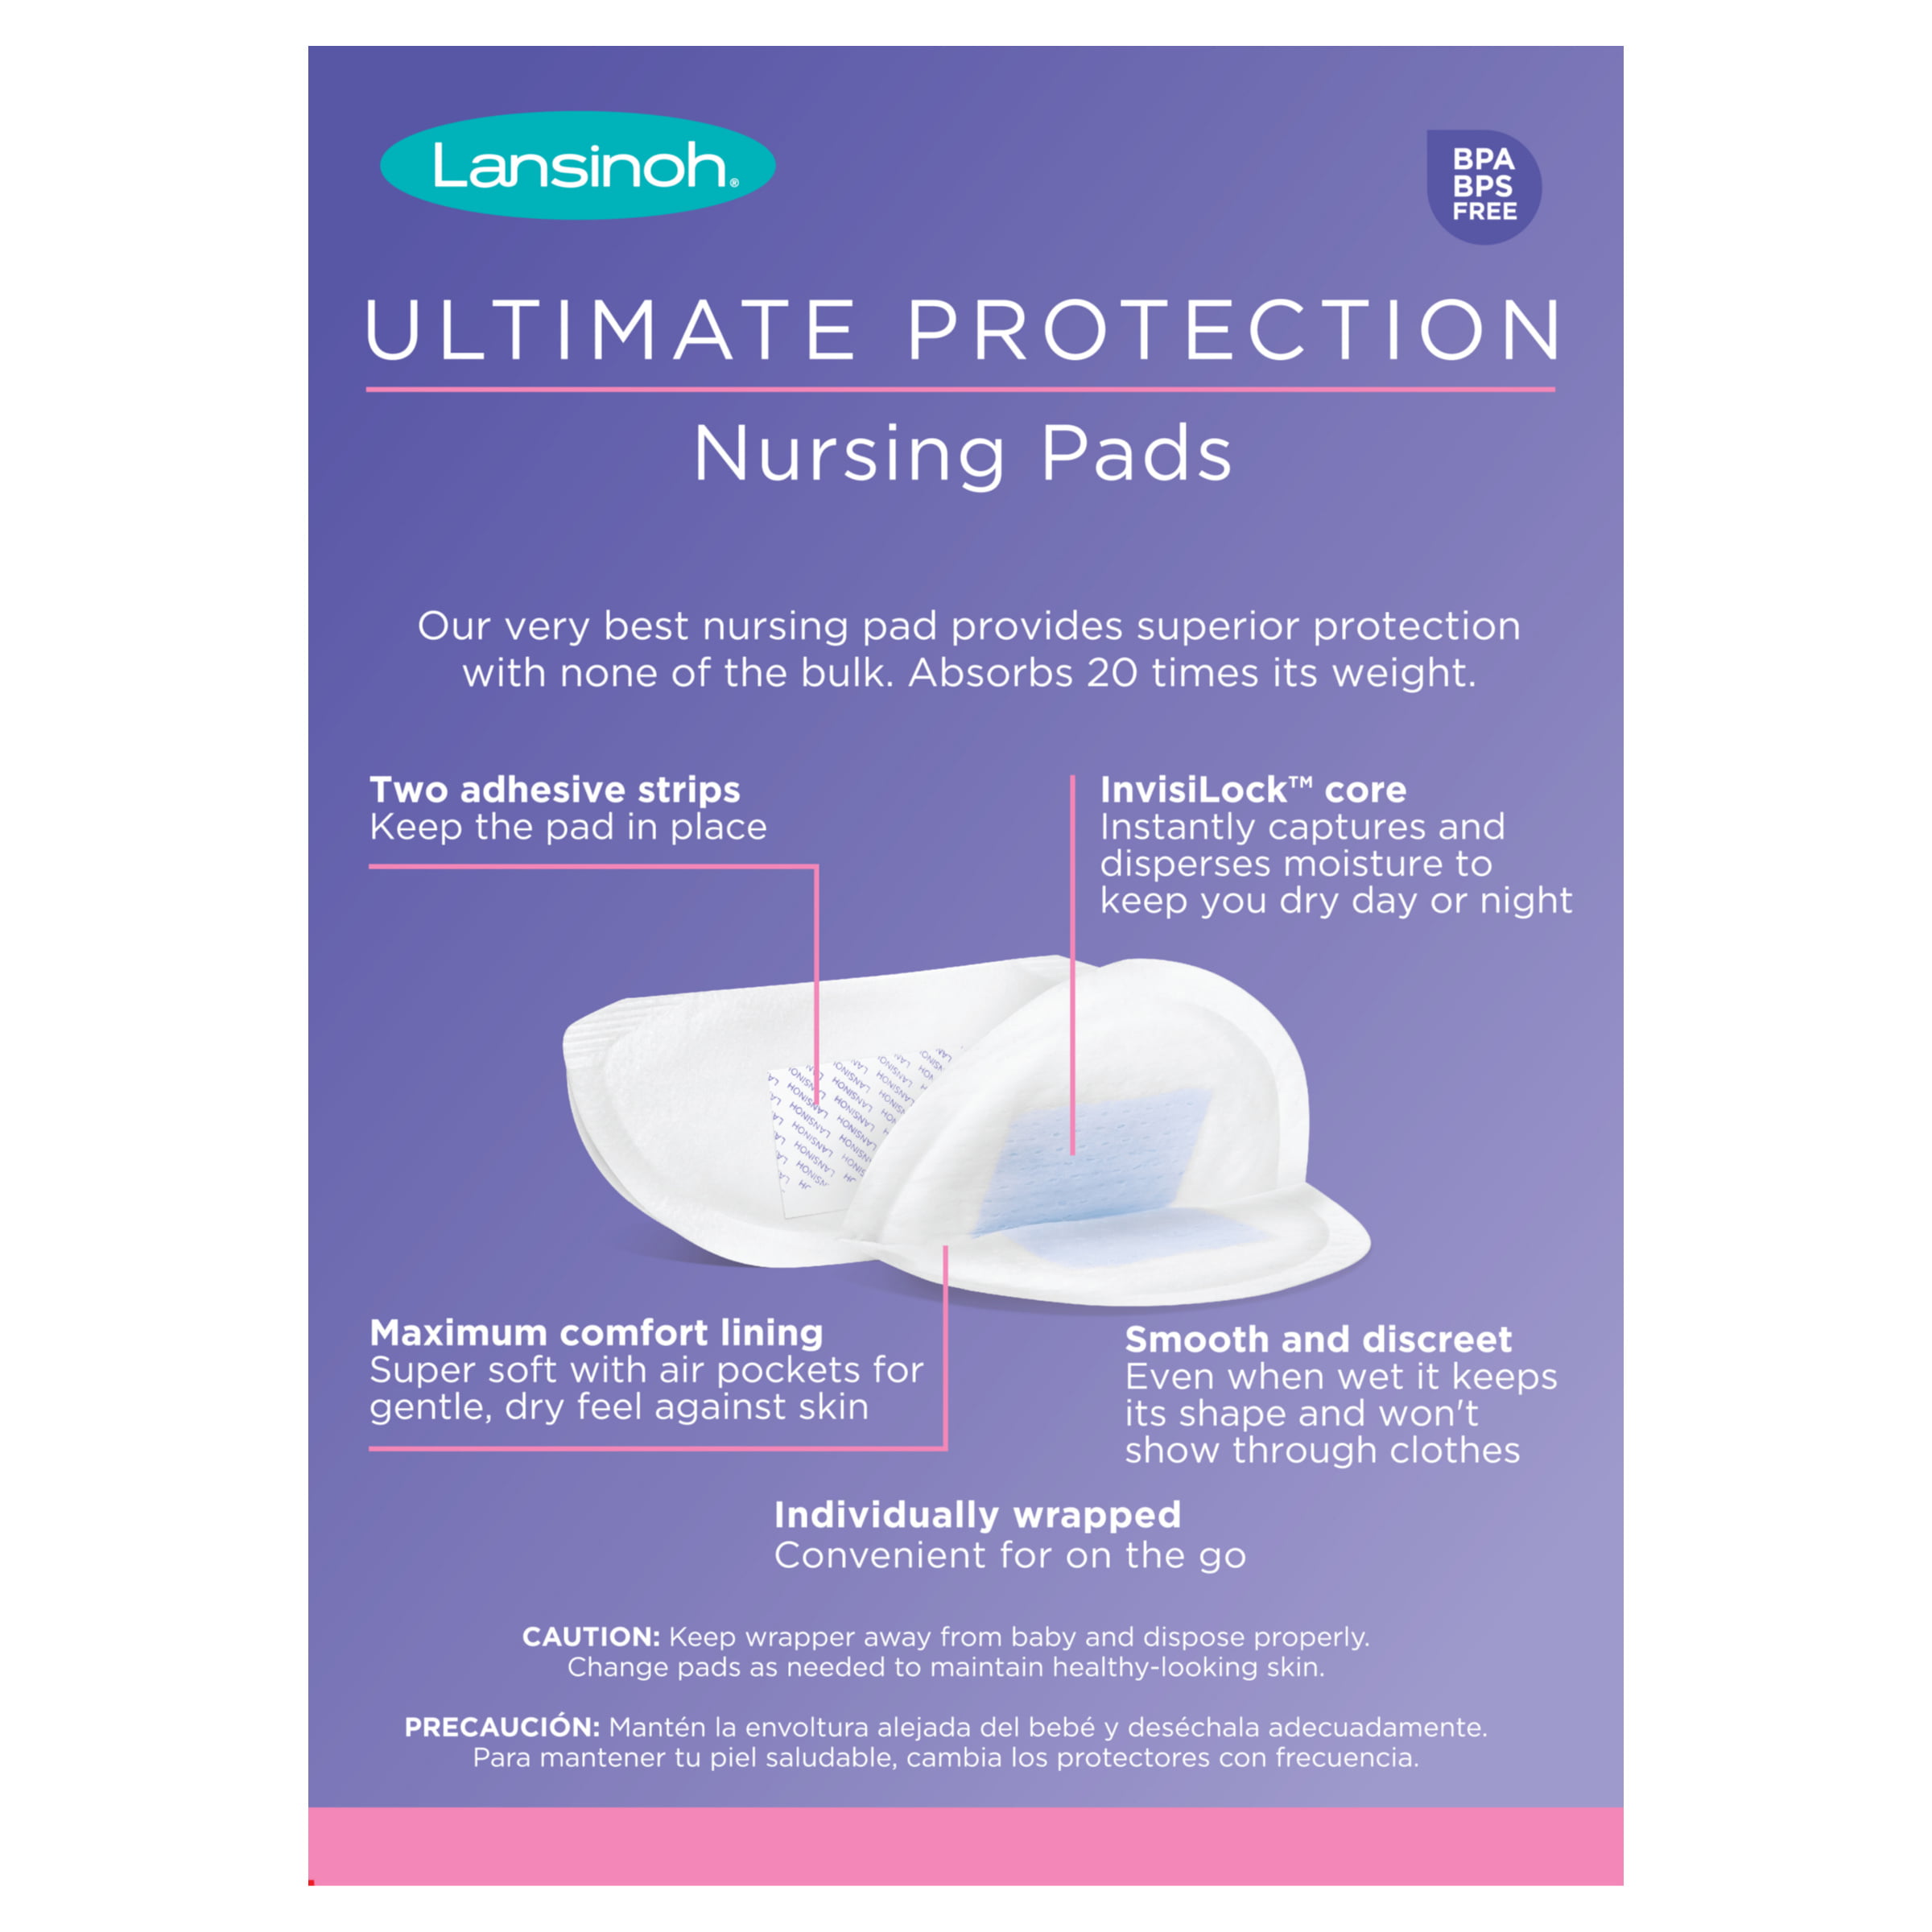 Lansinoh® Disposable Nursing Pads 60 ct